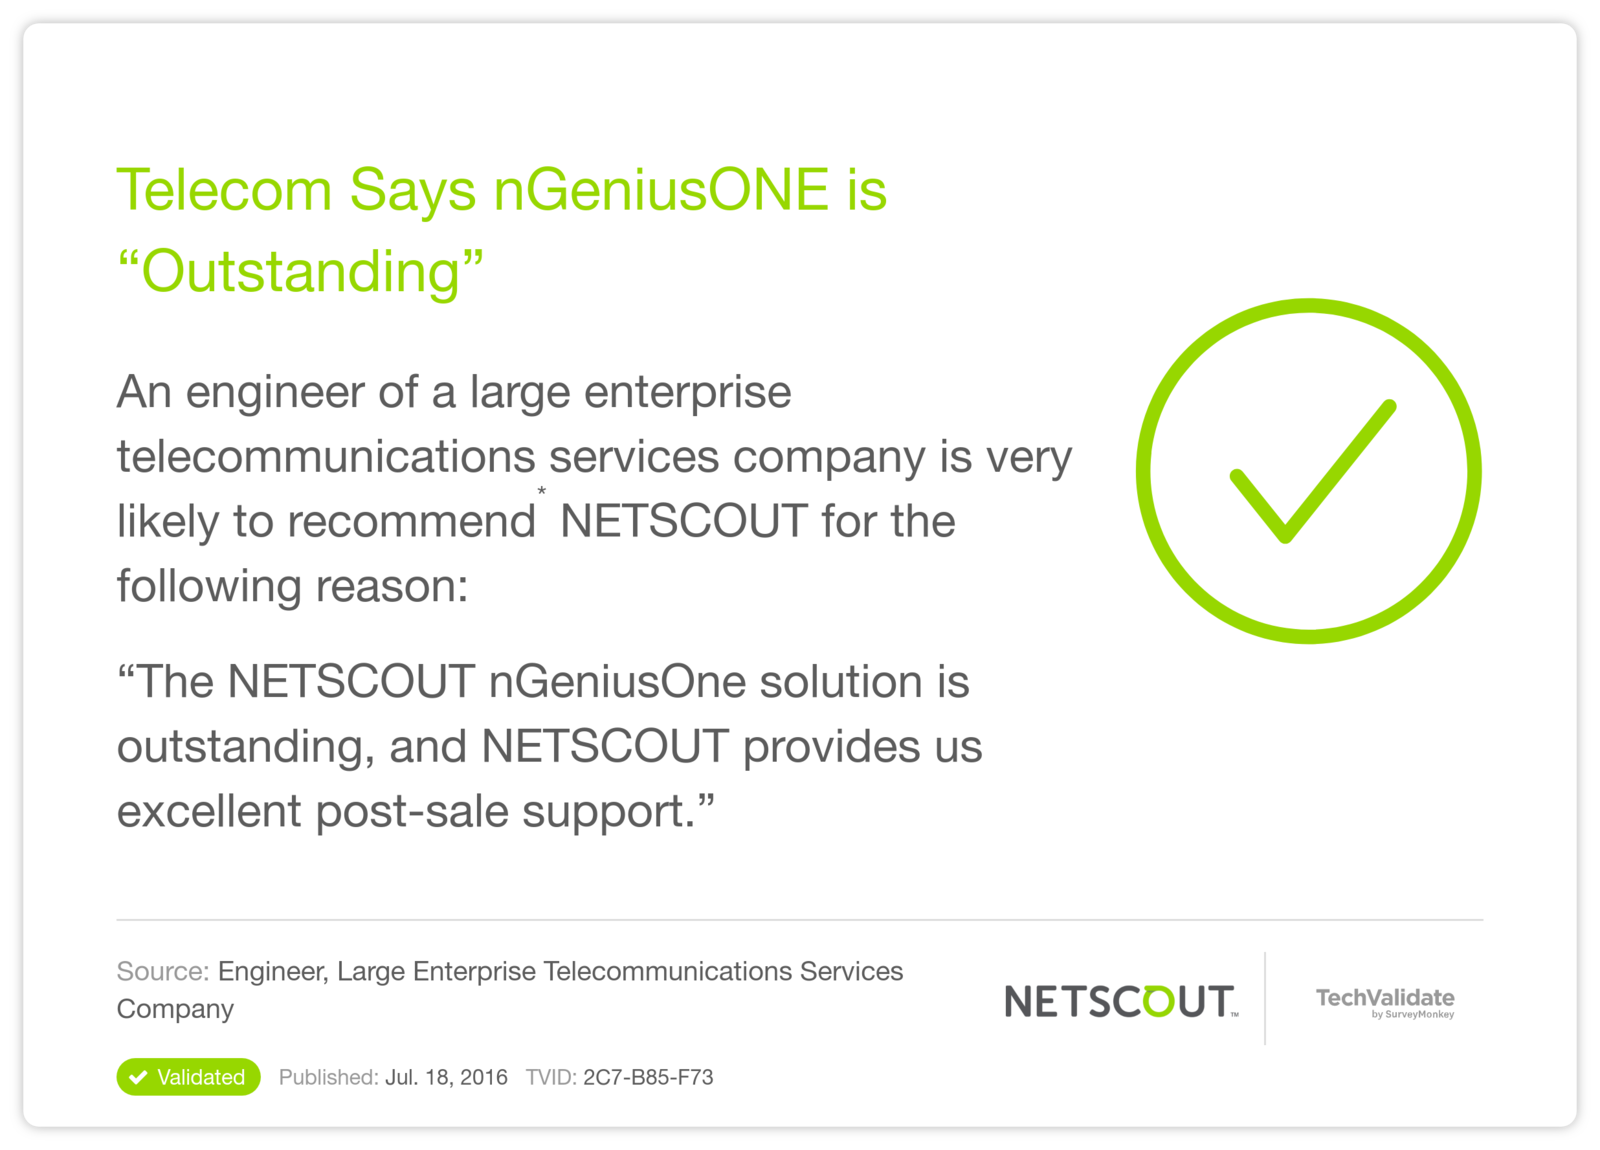 Telecom Says nGeniusONE is "Outstanding"